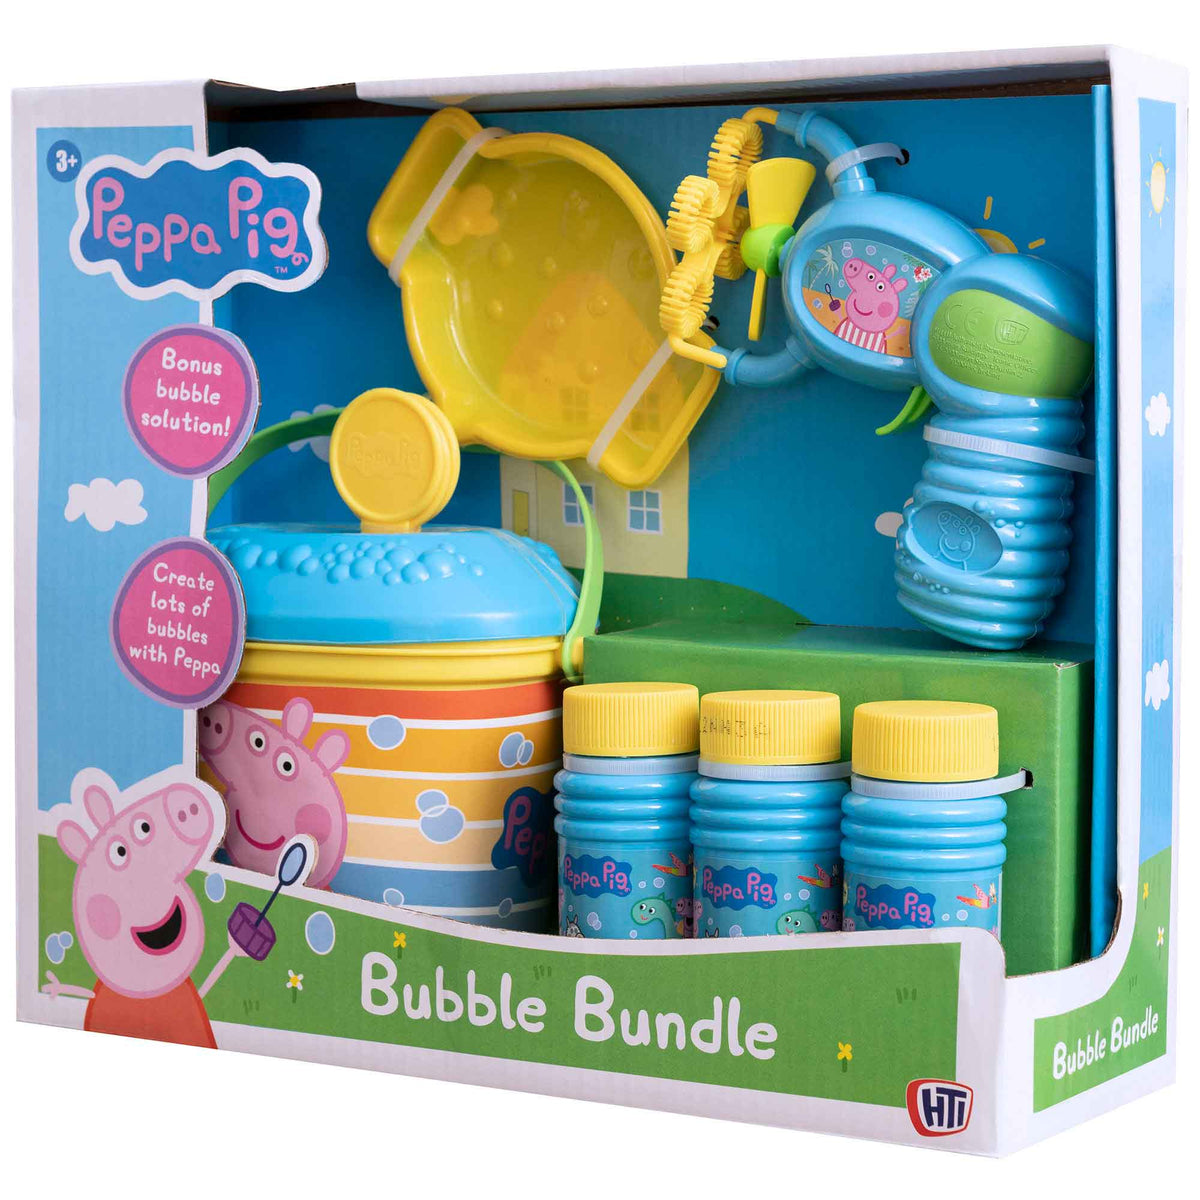 Peppa Pig Bubble Bundle + Bubblz 1Ltr. Bubble Solution Bundle